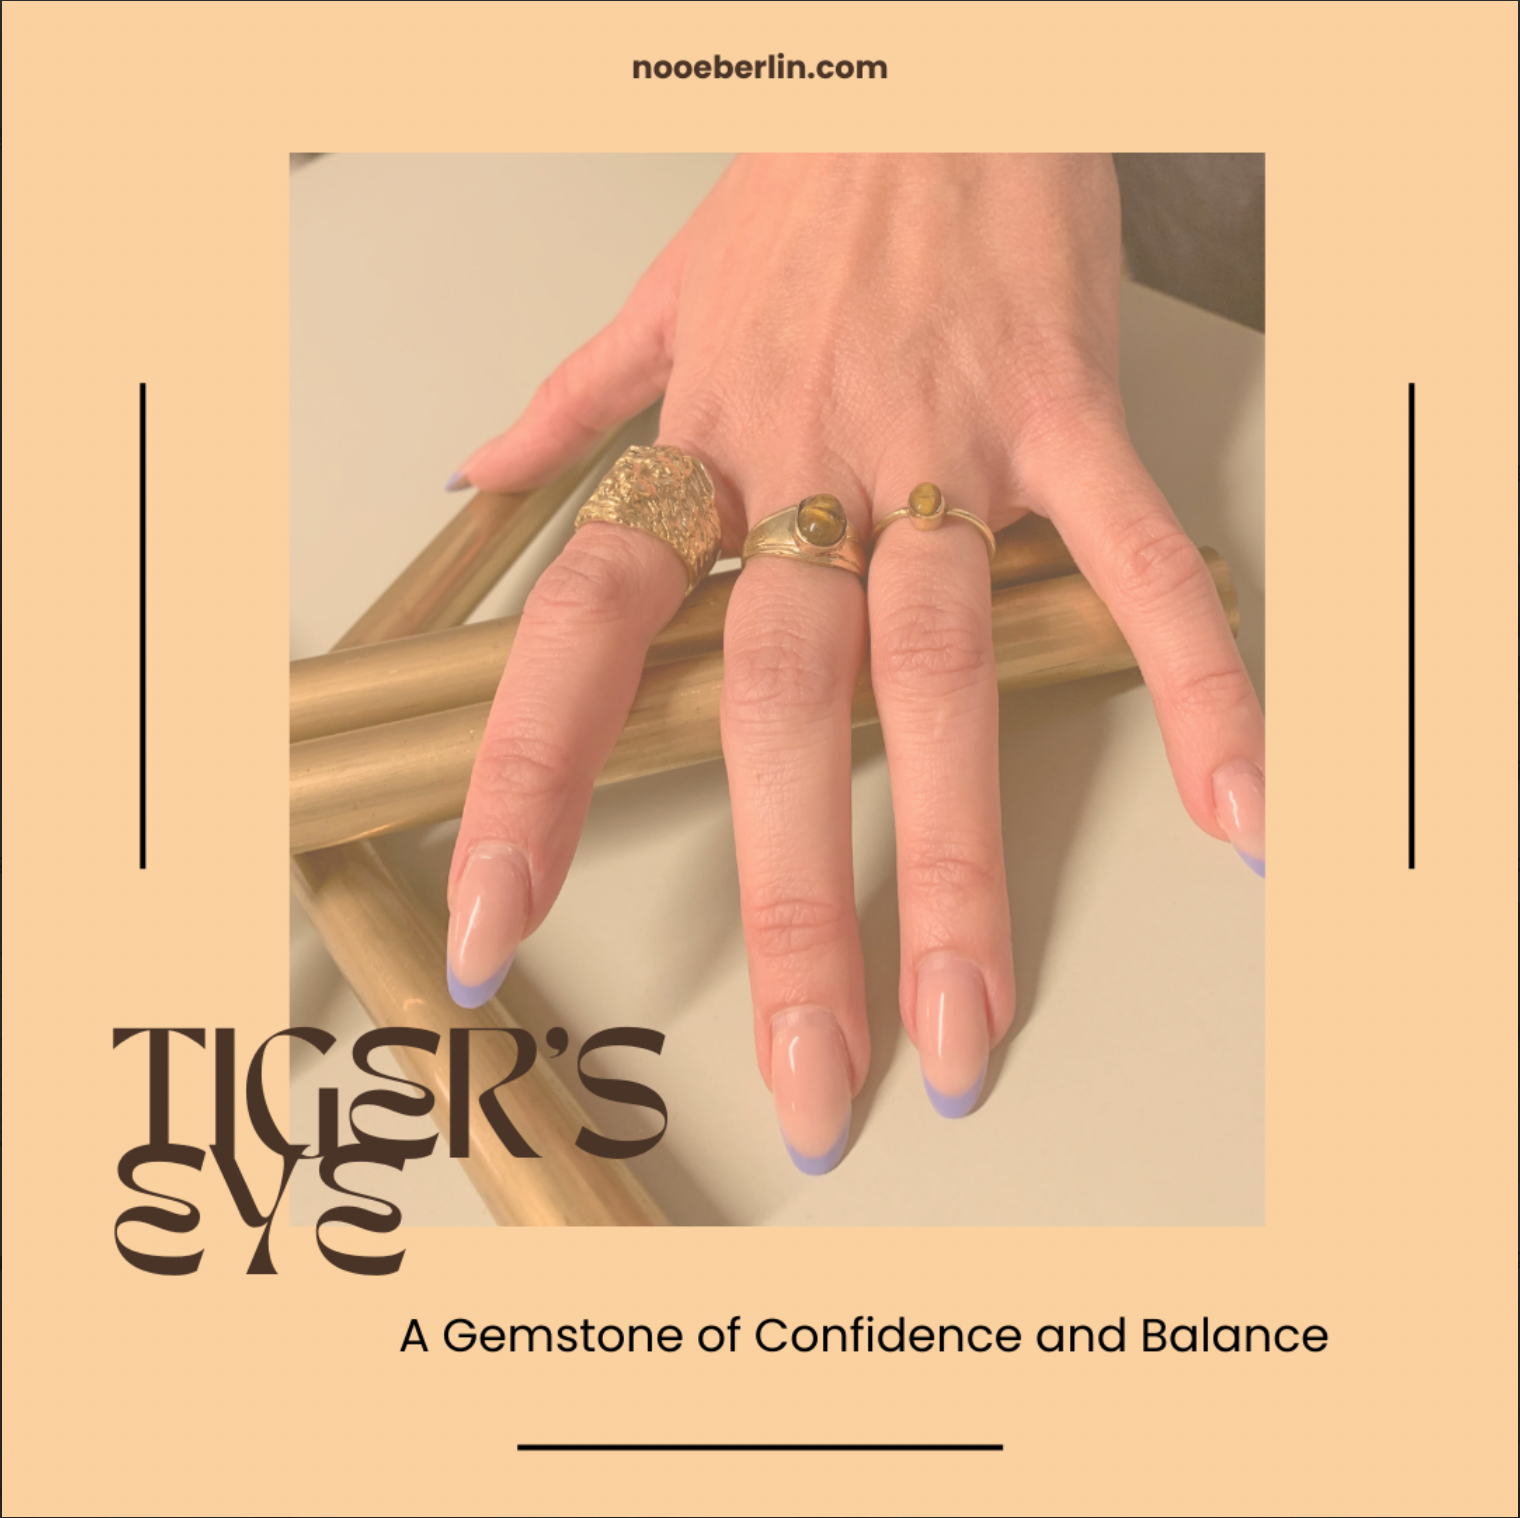 Das Tigerauge: Ein Edelstein der Zuversicht und des Gleichgewichts